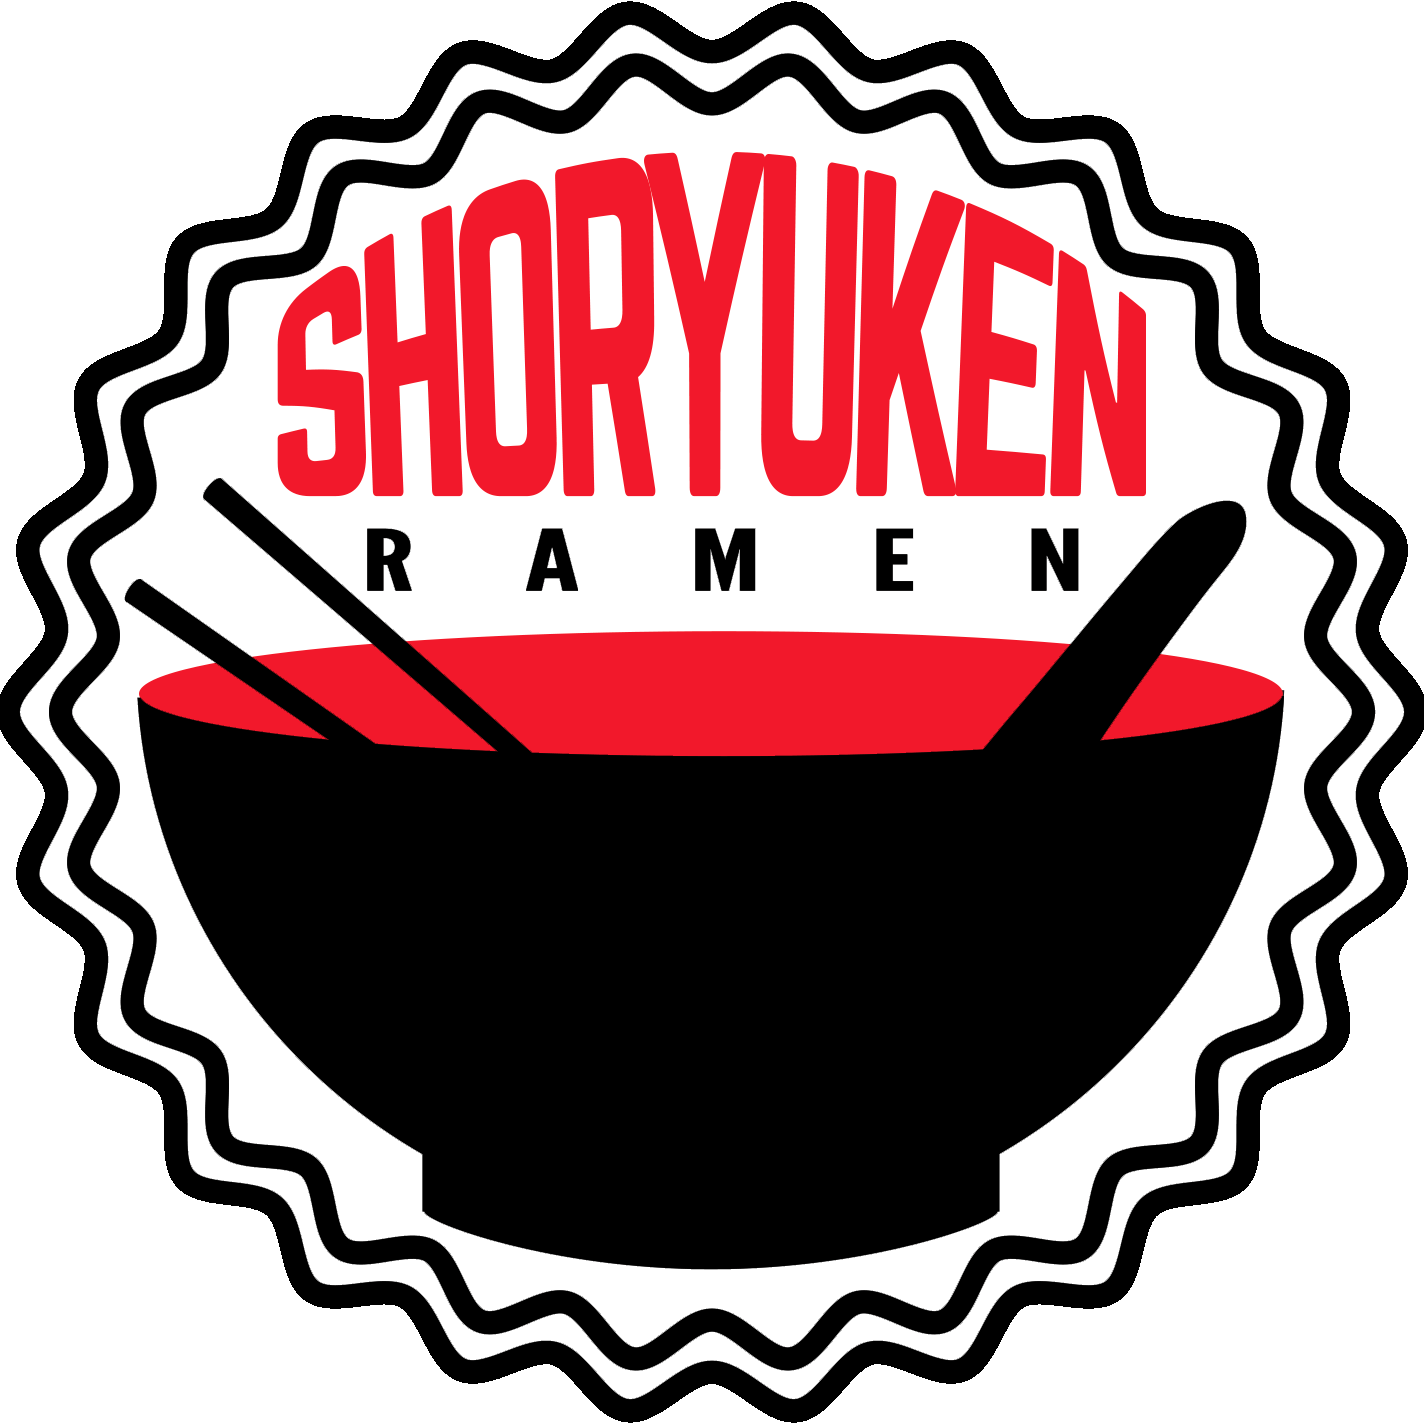 Shoryuken Ramen - Shoryuken Ramen (1424x1424)